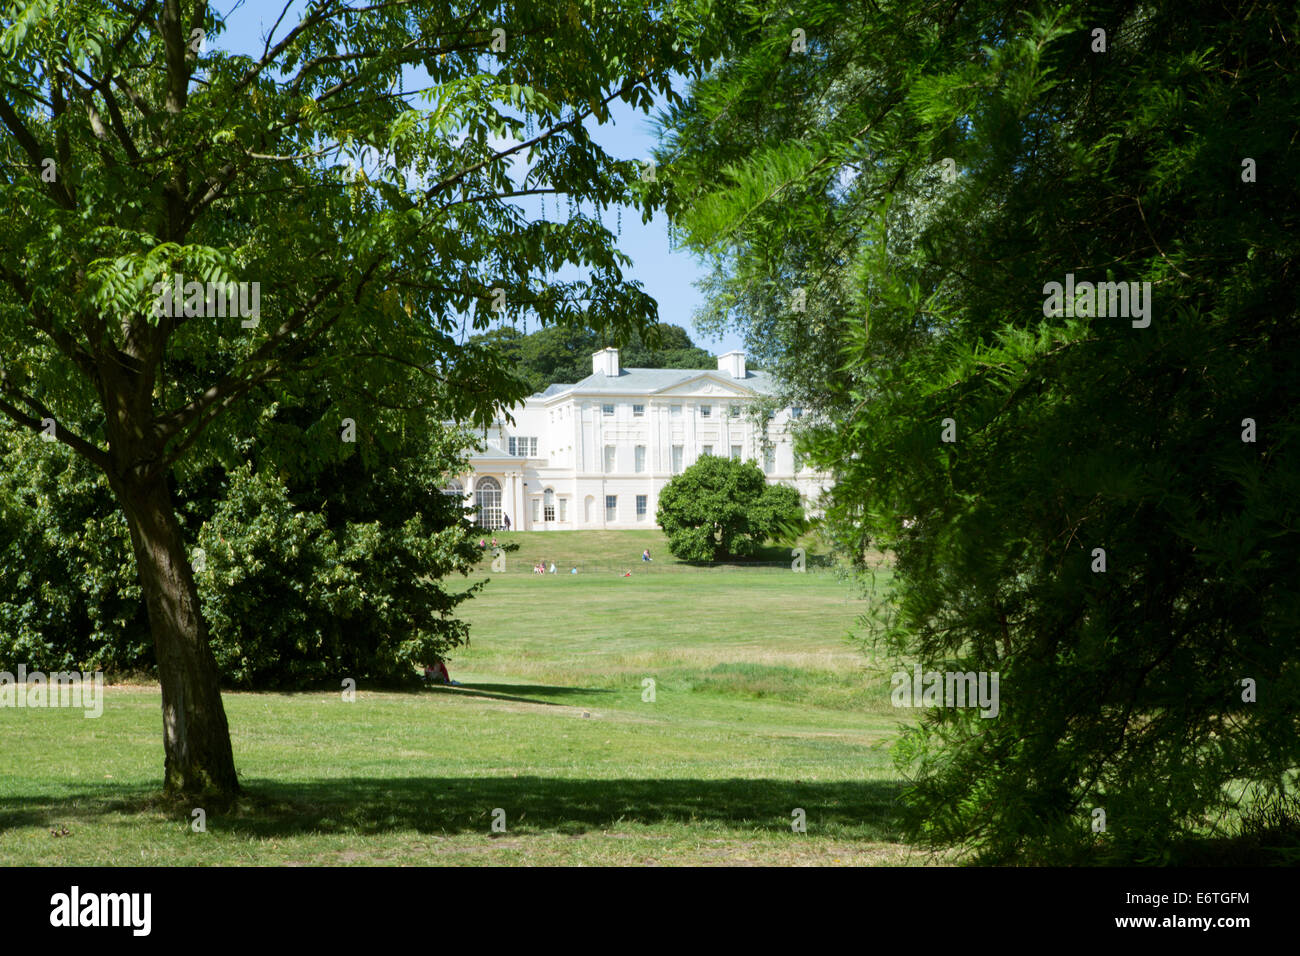 Fassade des Kenwood House Herrenhauses auf Hampstead Heath, durch Bäume an einem sonnigen Sommertag, Hampstead / Highgate, Borough of Camden, London, UK Stockfoto